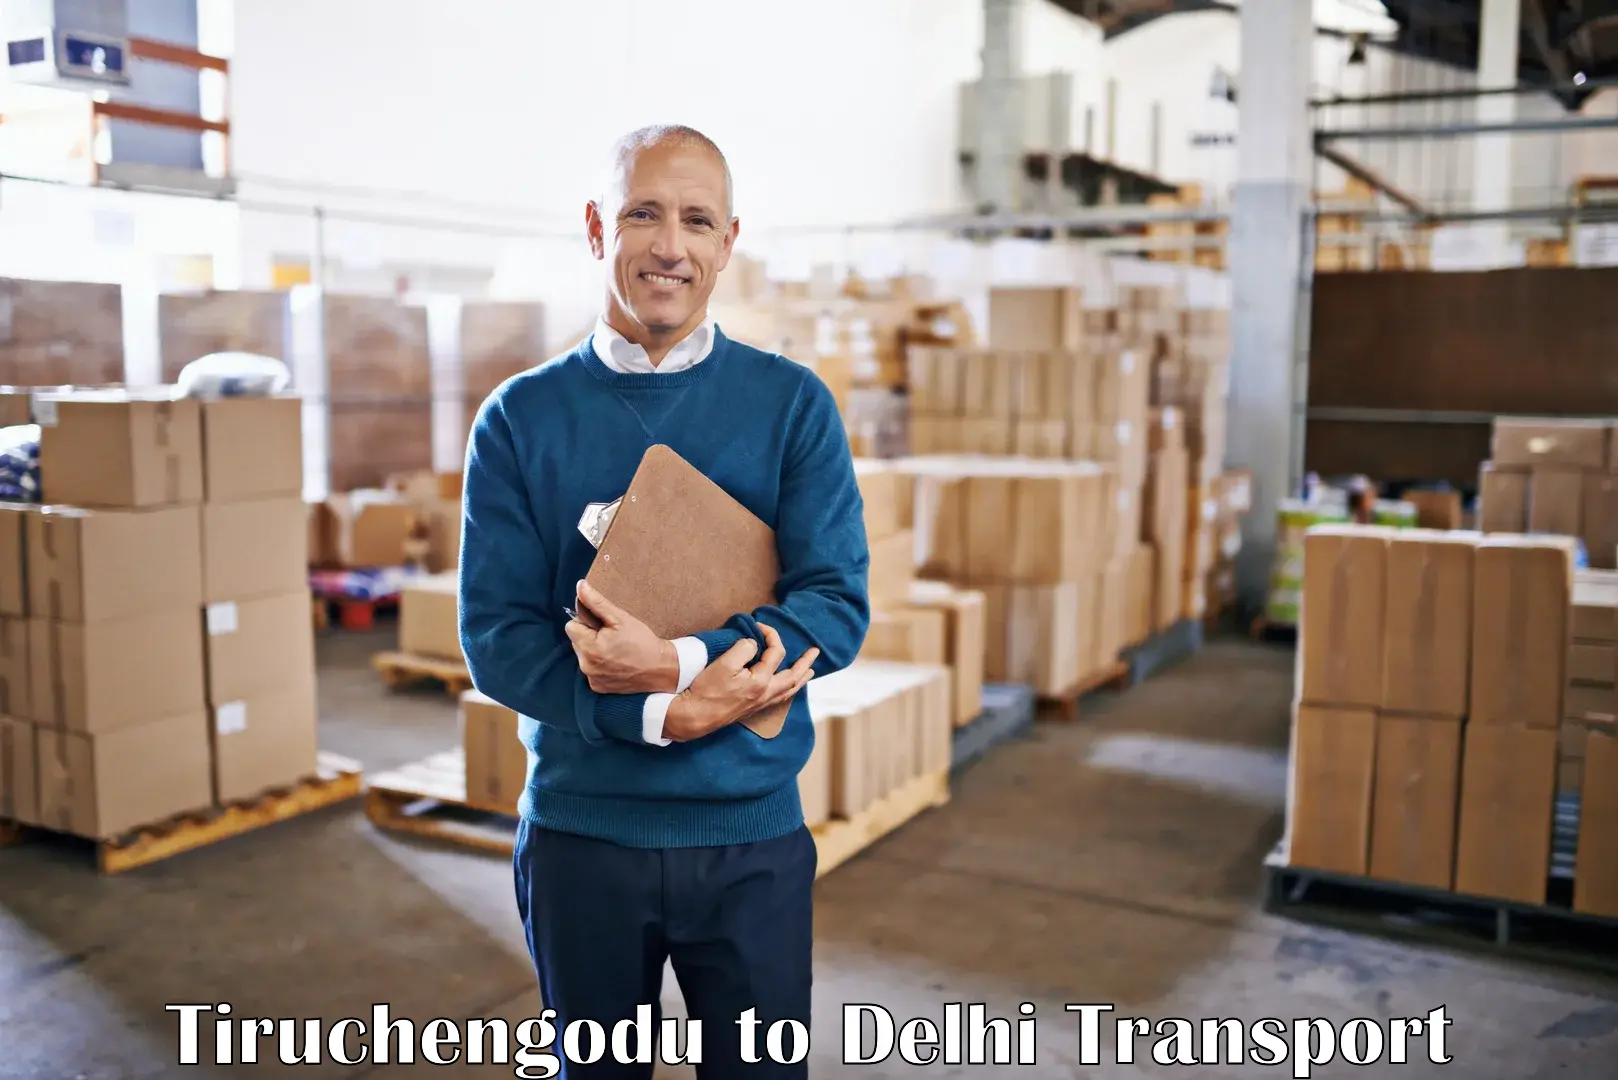 Lorry transport service Tiruchengodu to Delhi